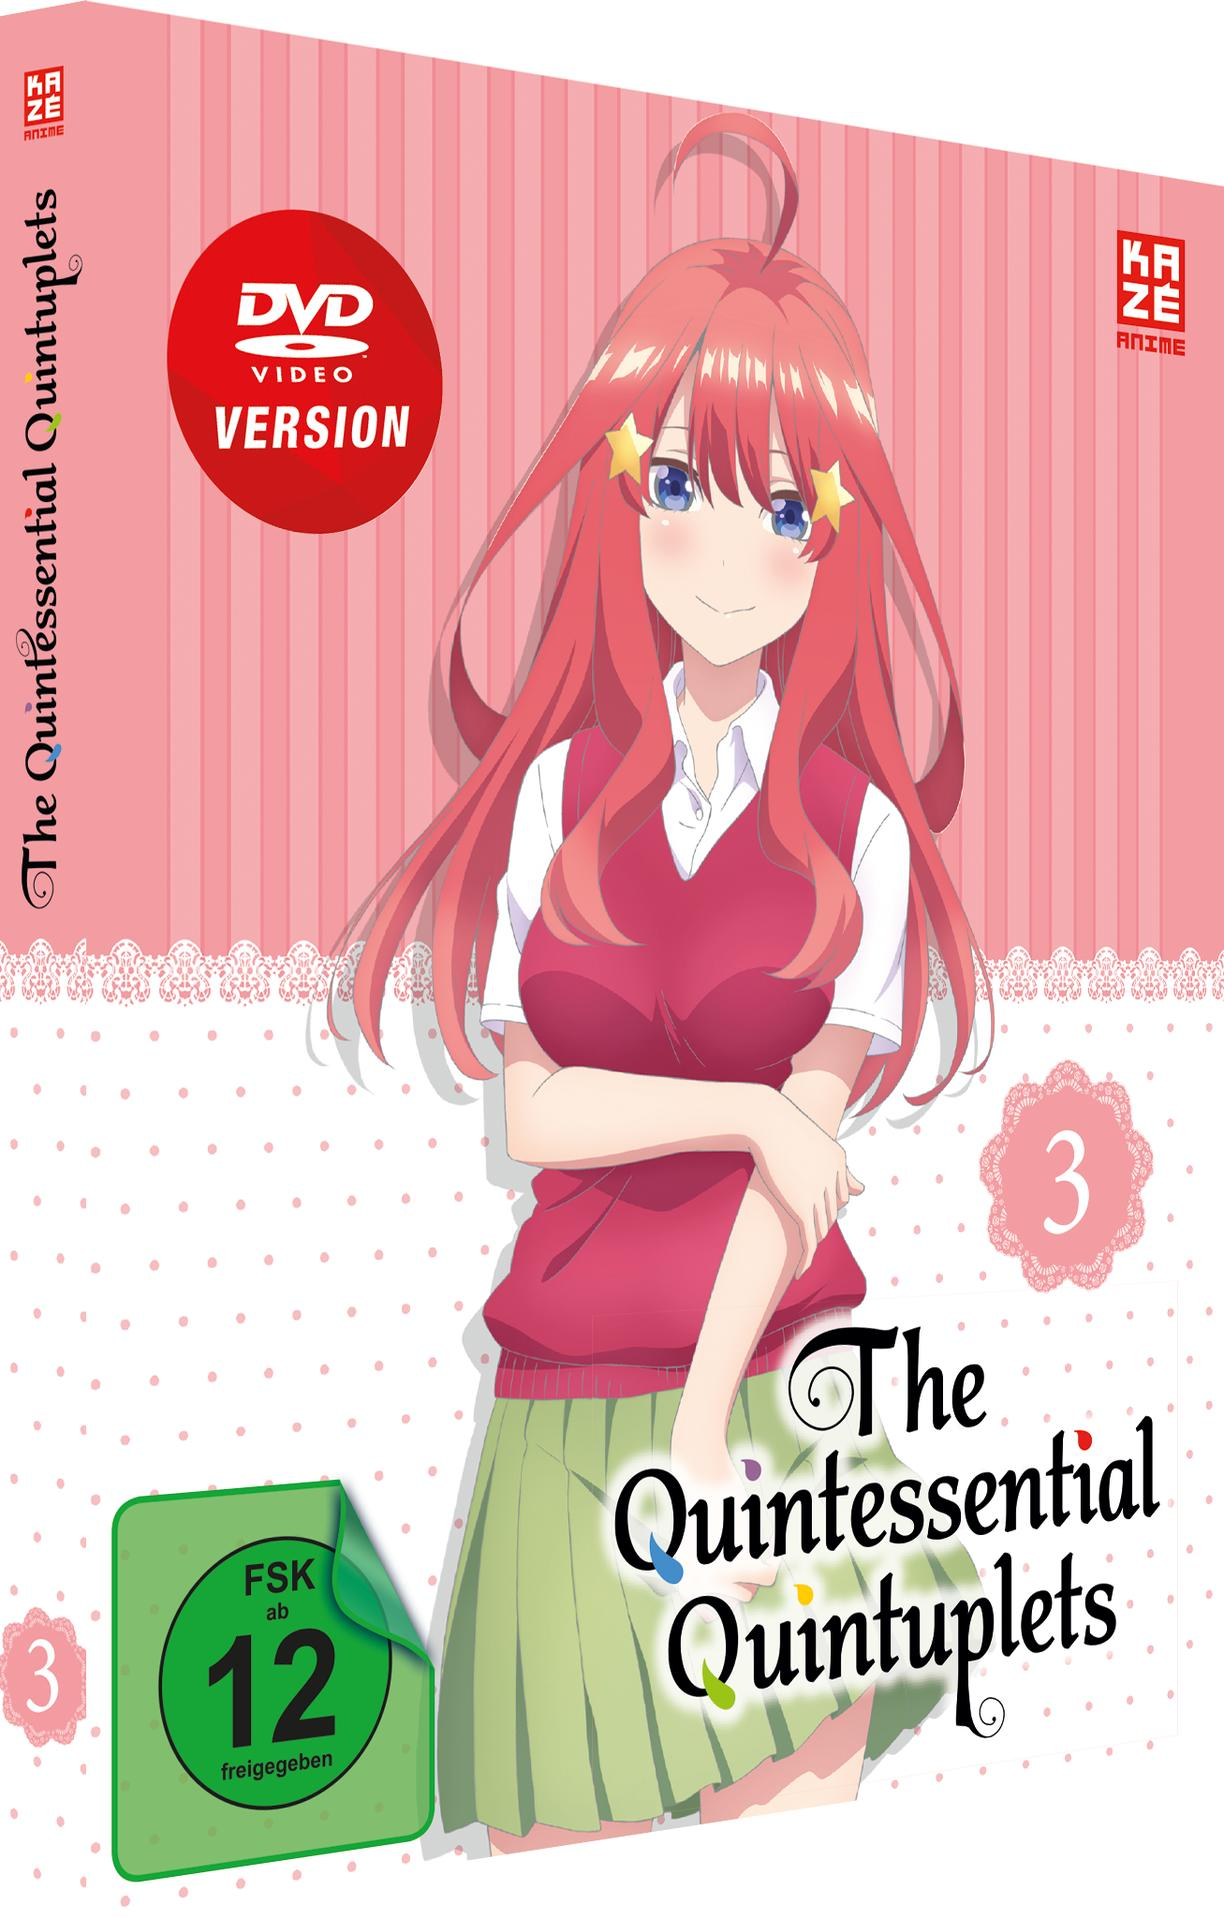 The 3 Quintuplets Quintessential DVD Vol. –